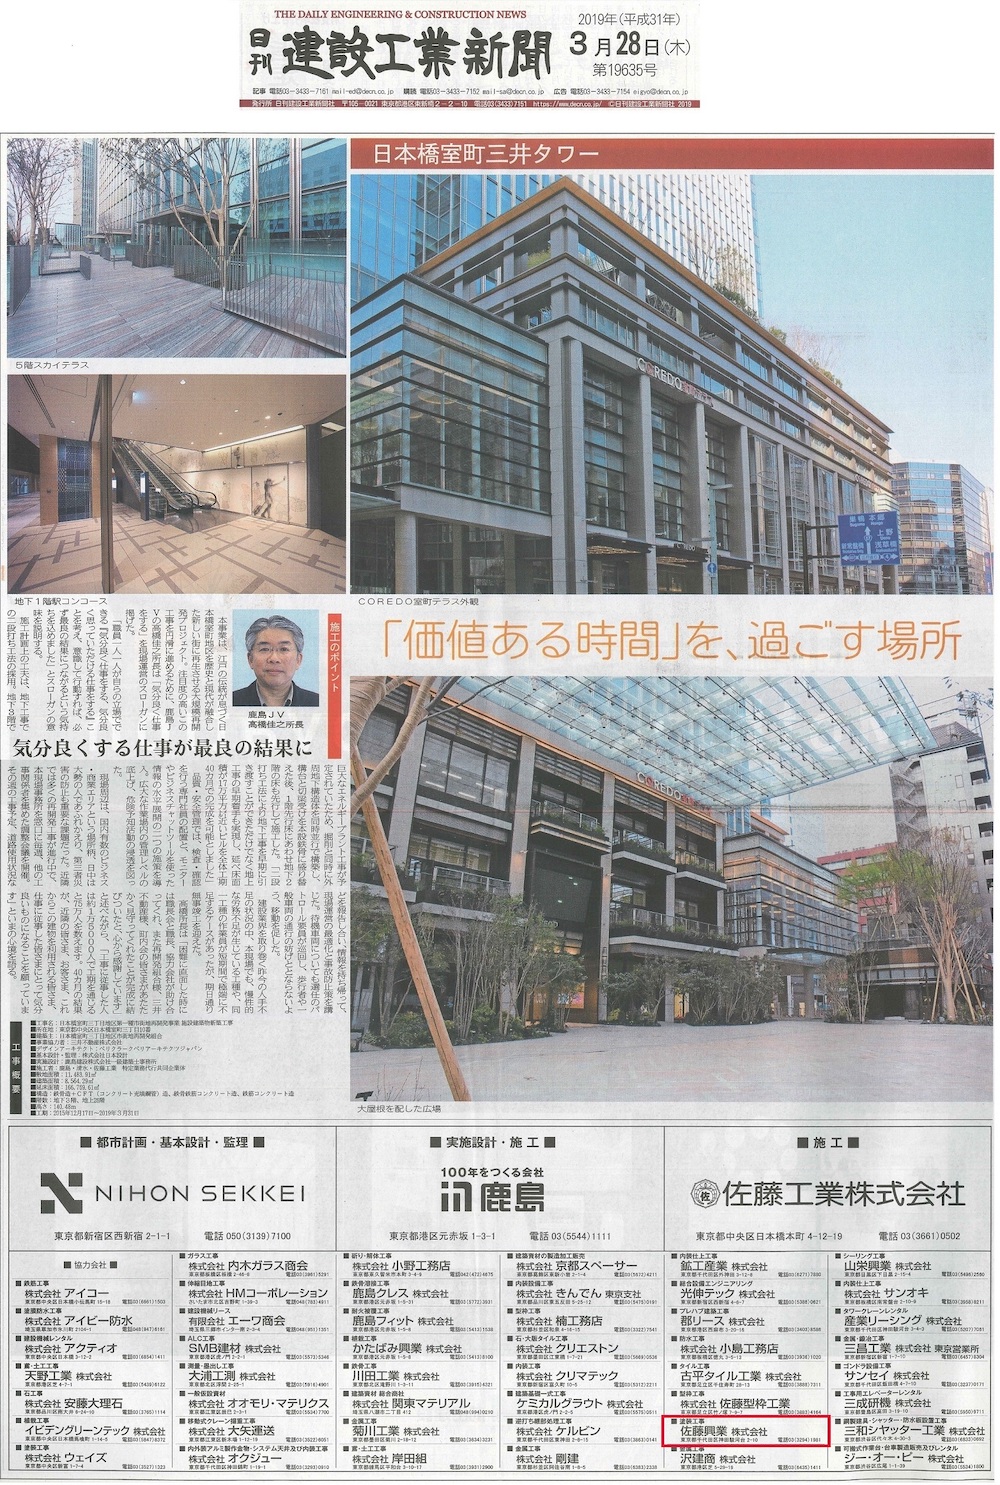 日本橋室町三井タワーの竣工広告が『日刊建設工業新聞』に掲載